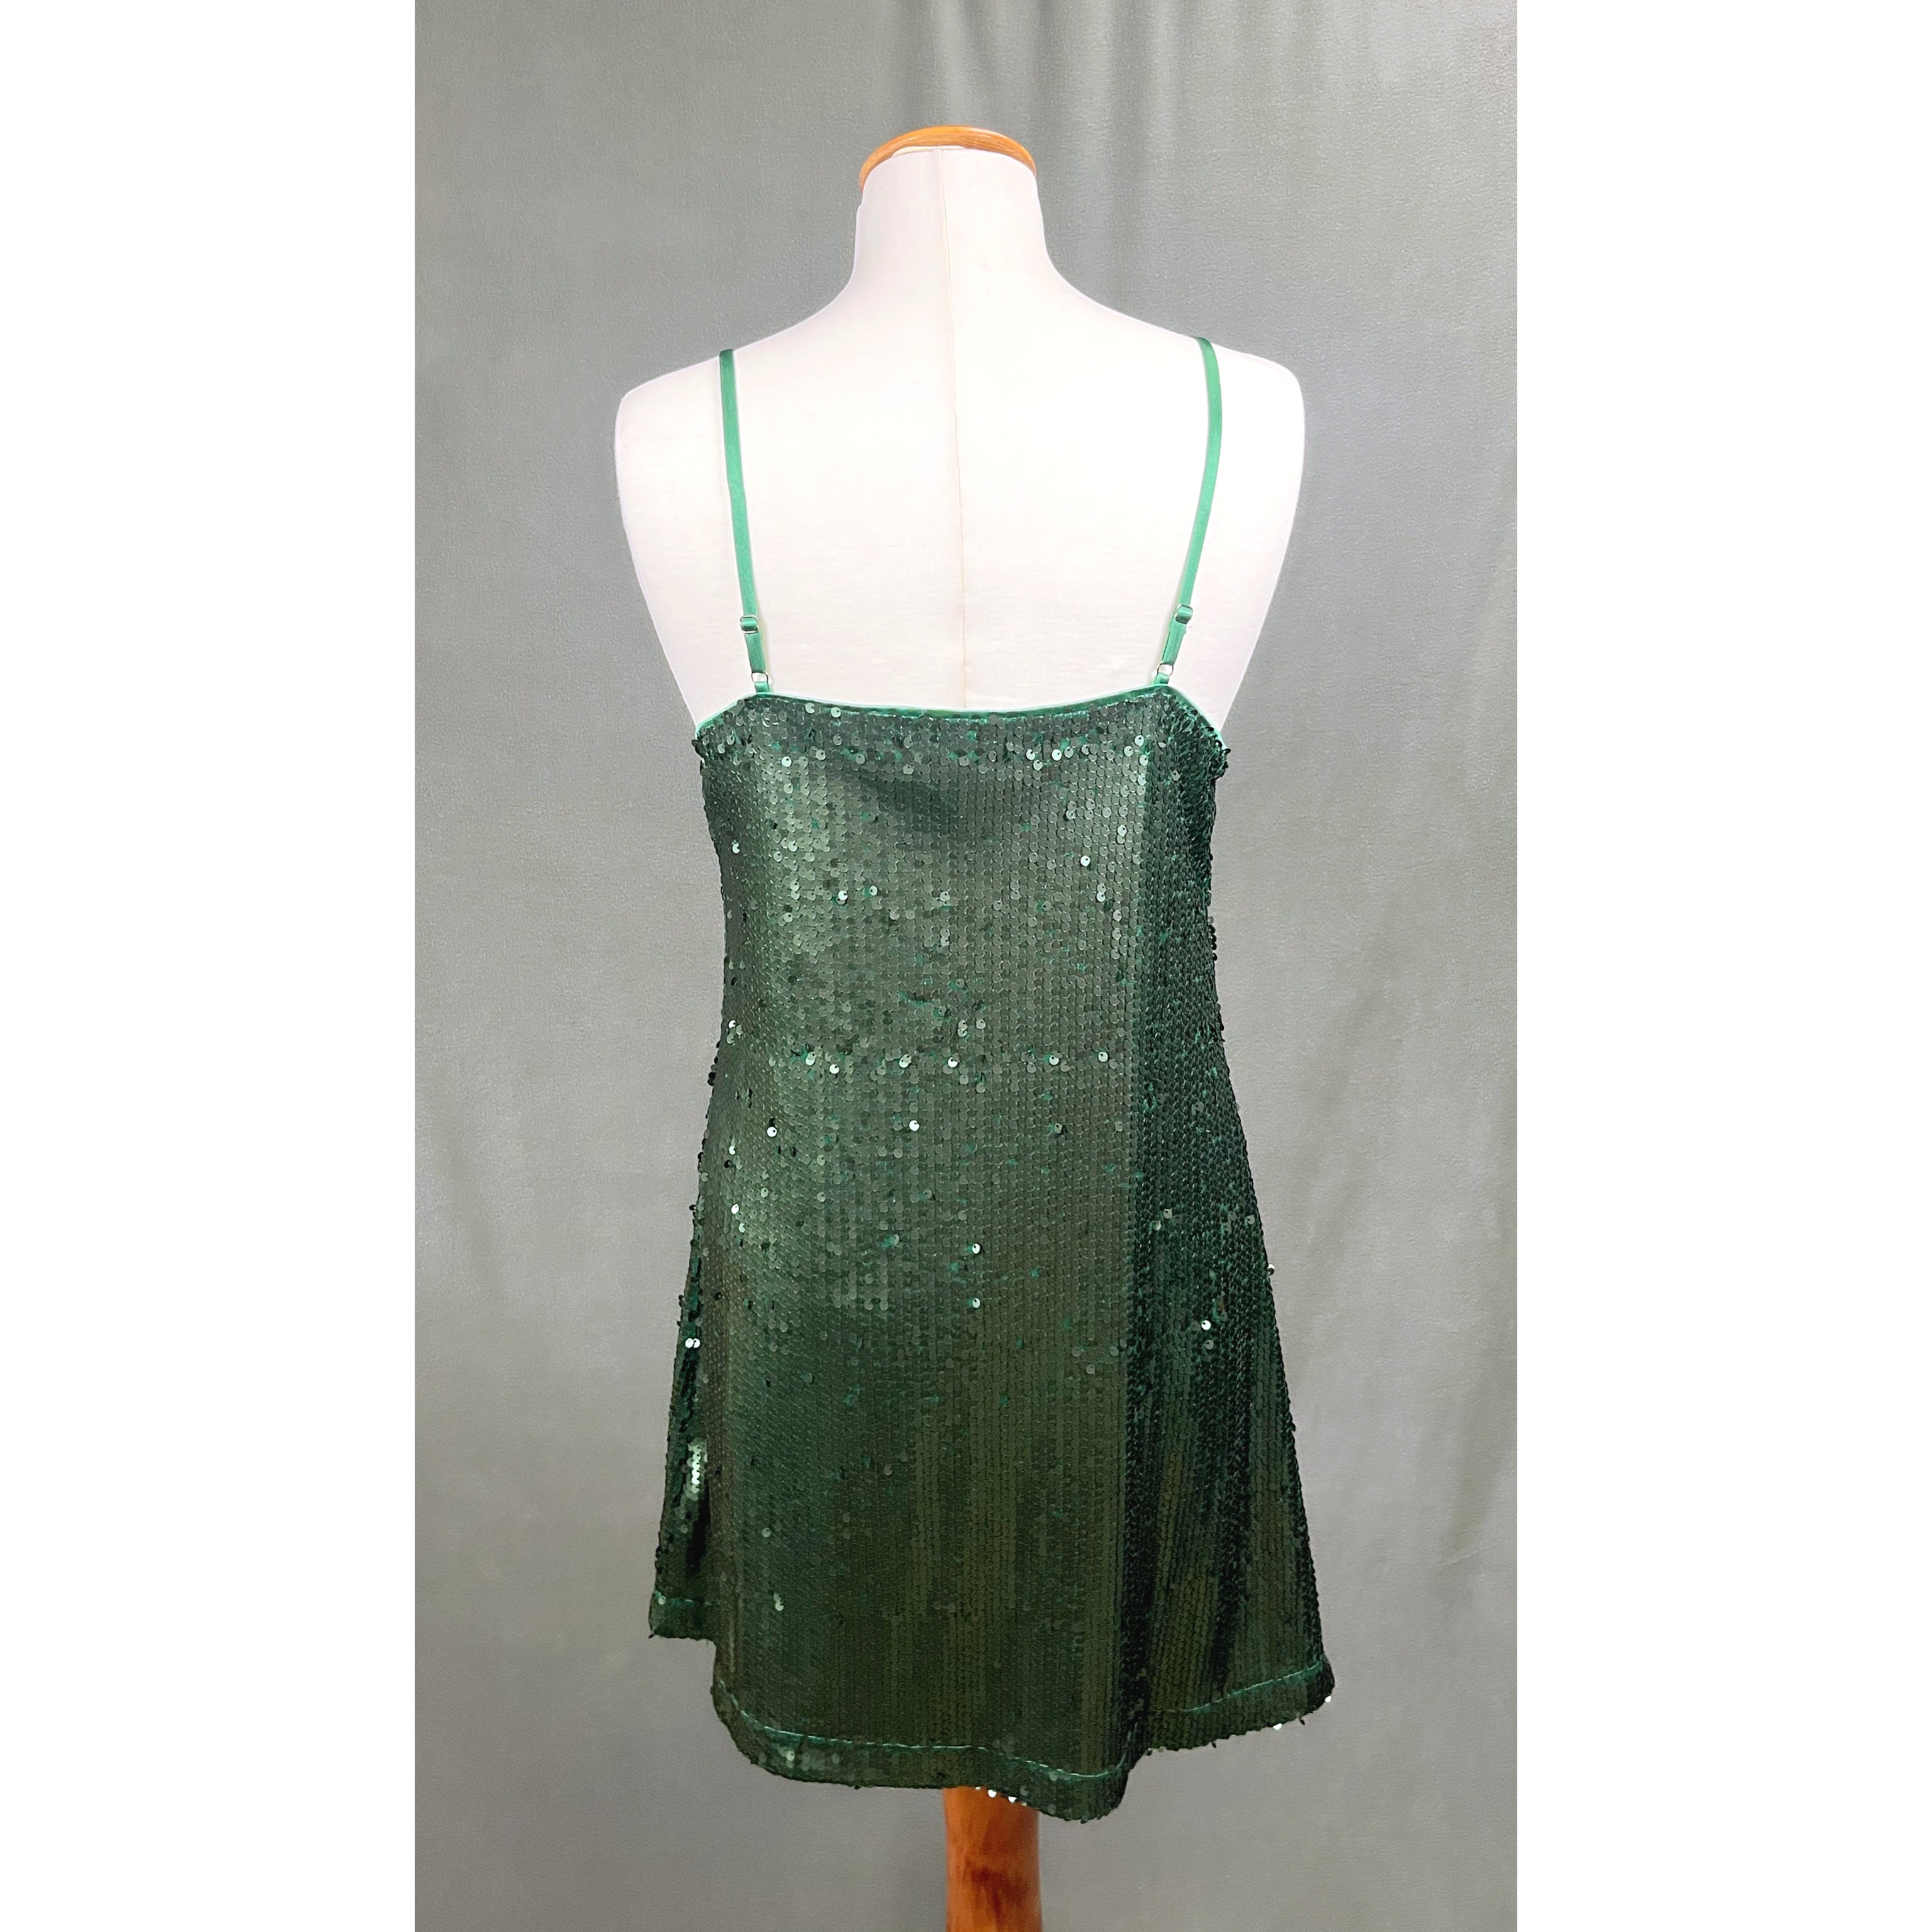 B. Smart evergreen sequin dress, size 3/4